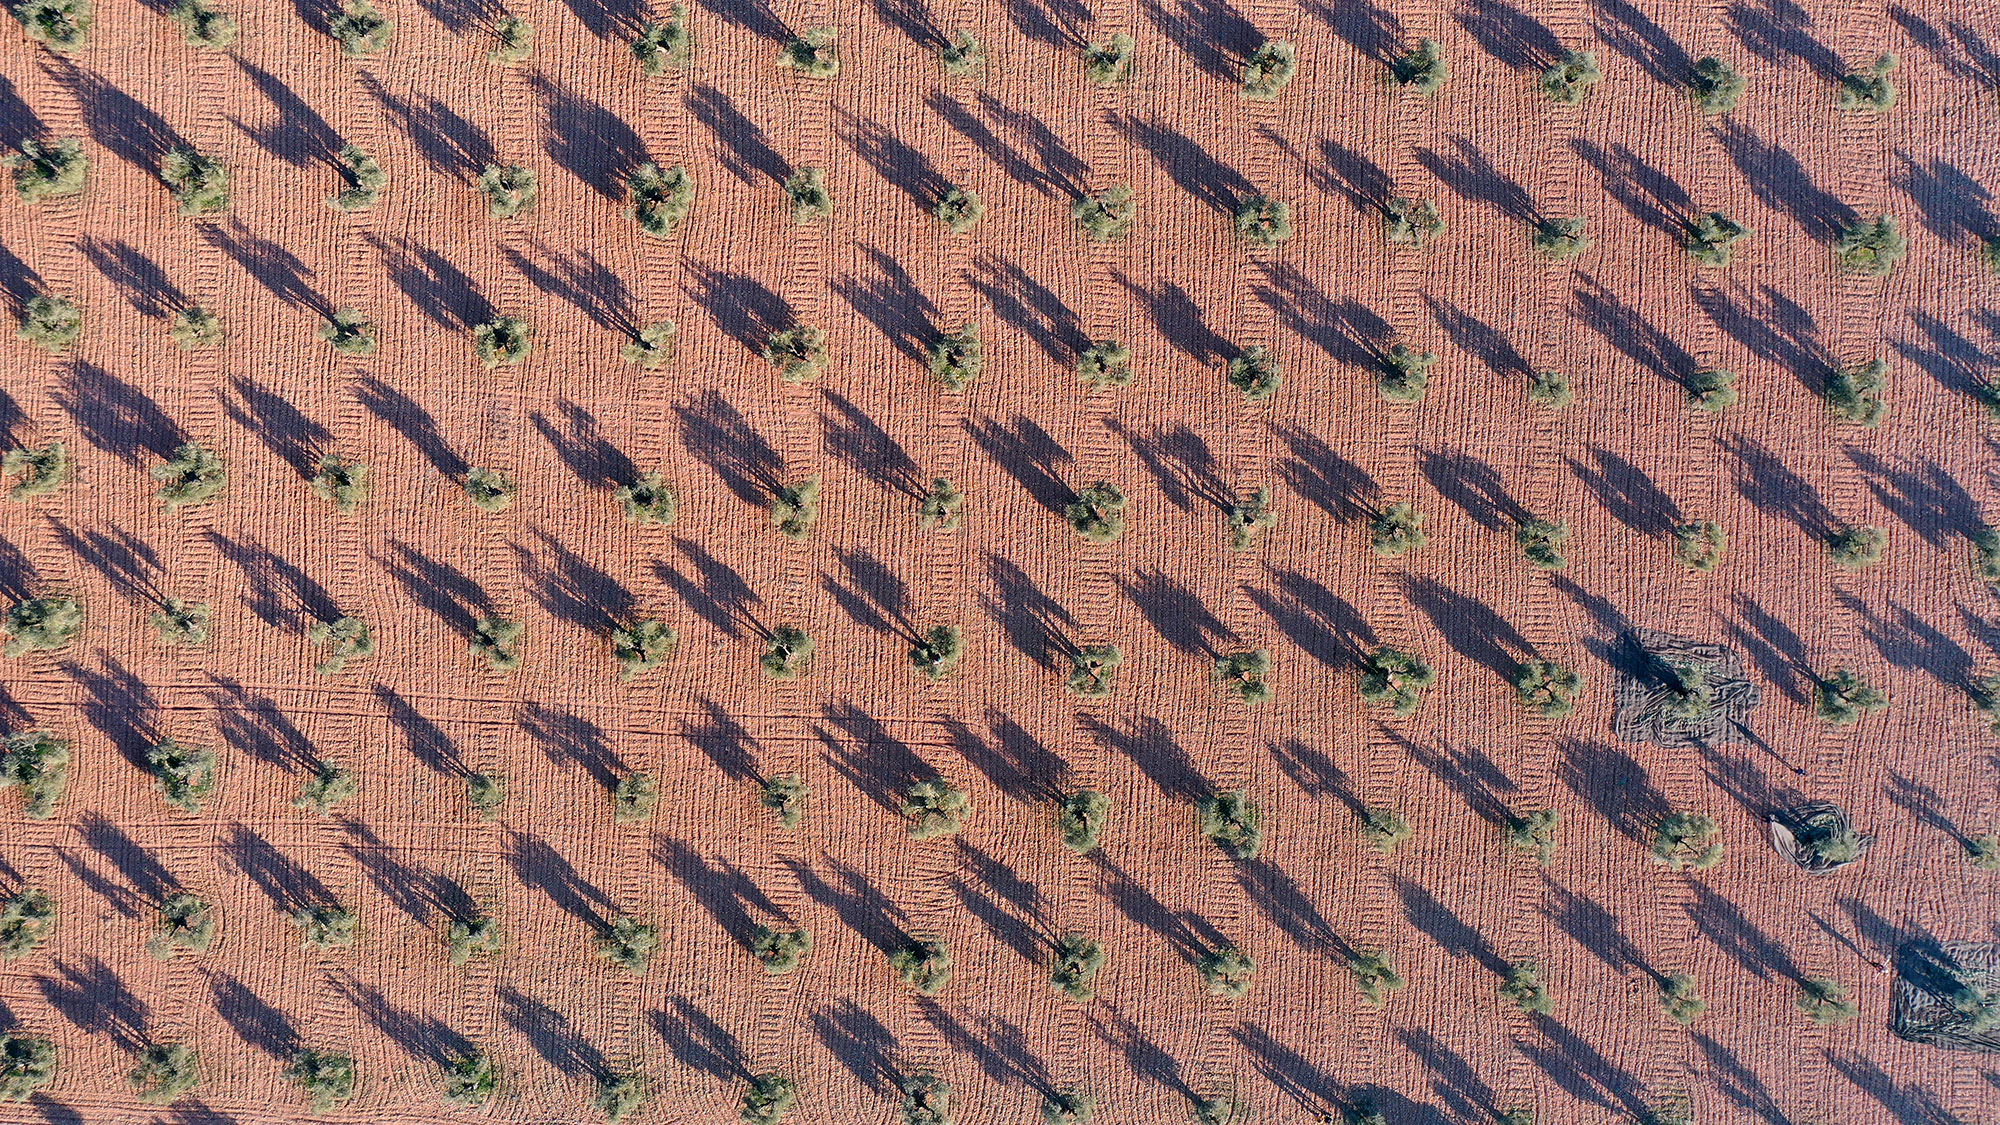 Vista aerea de olivar